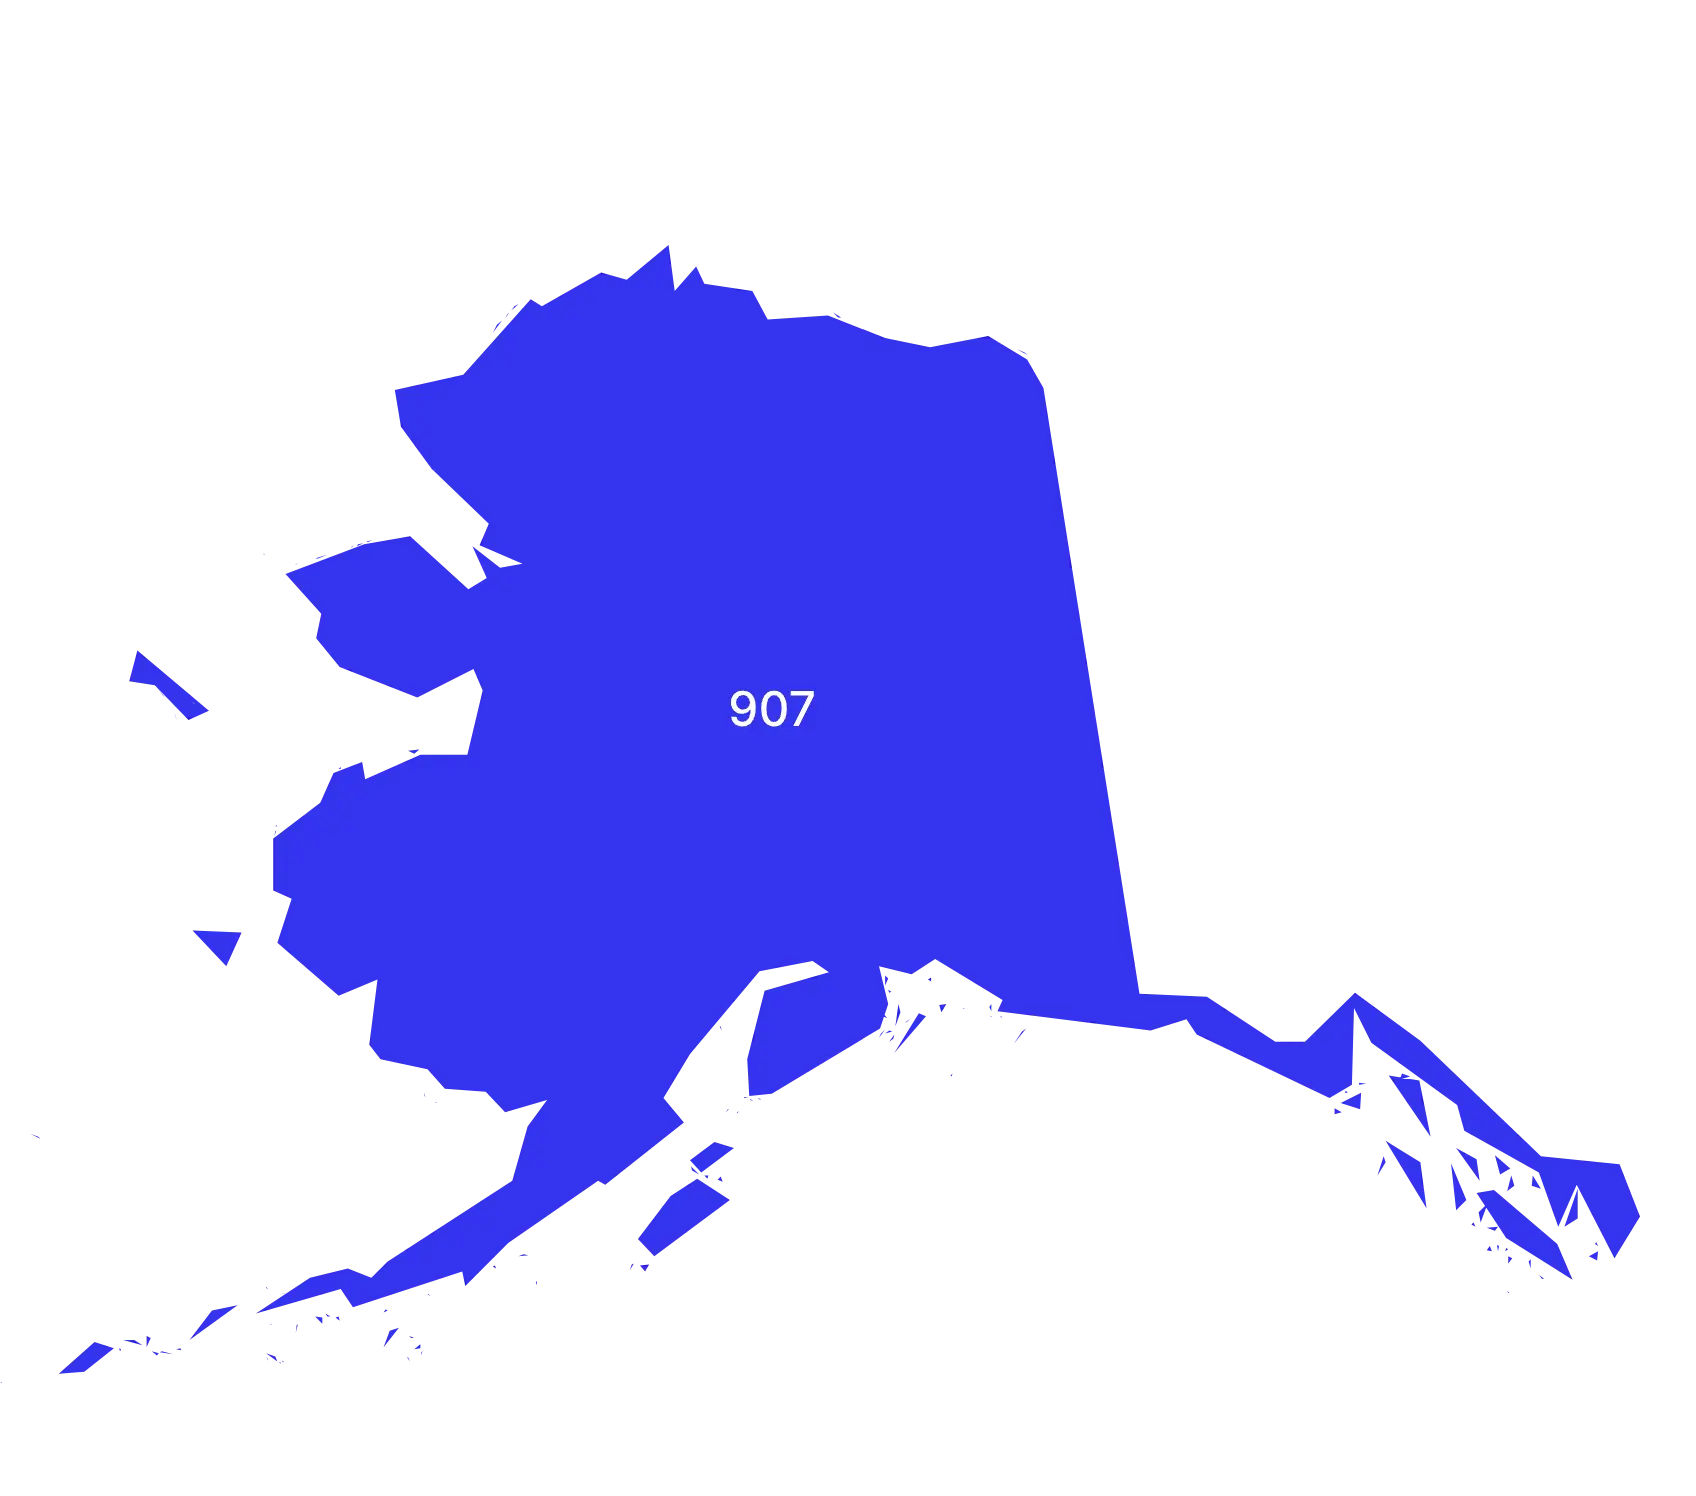 Alaska phone numbers